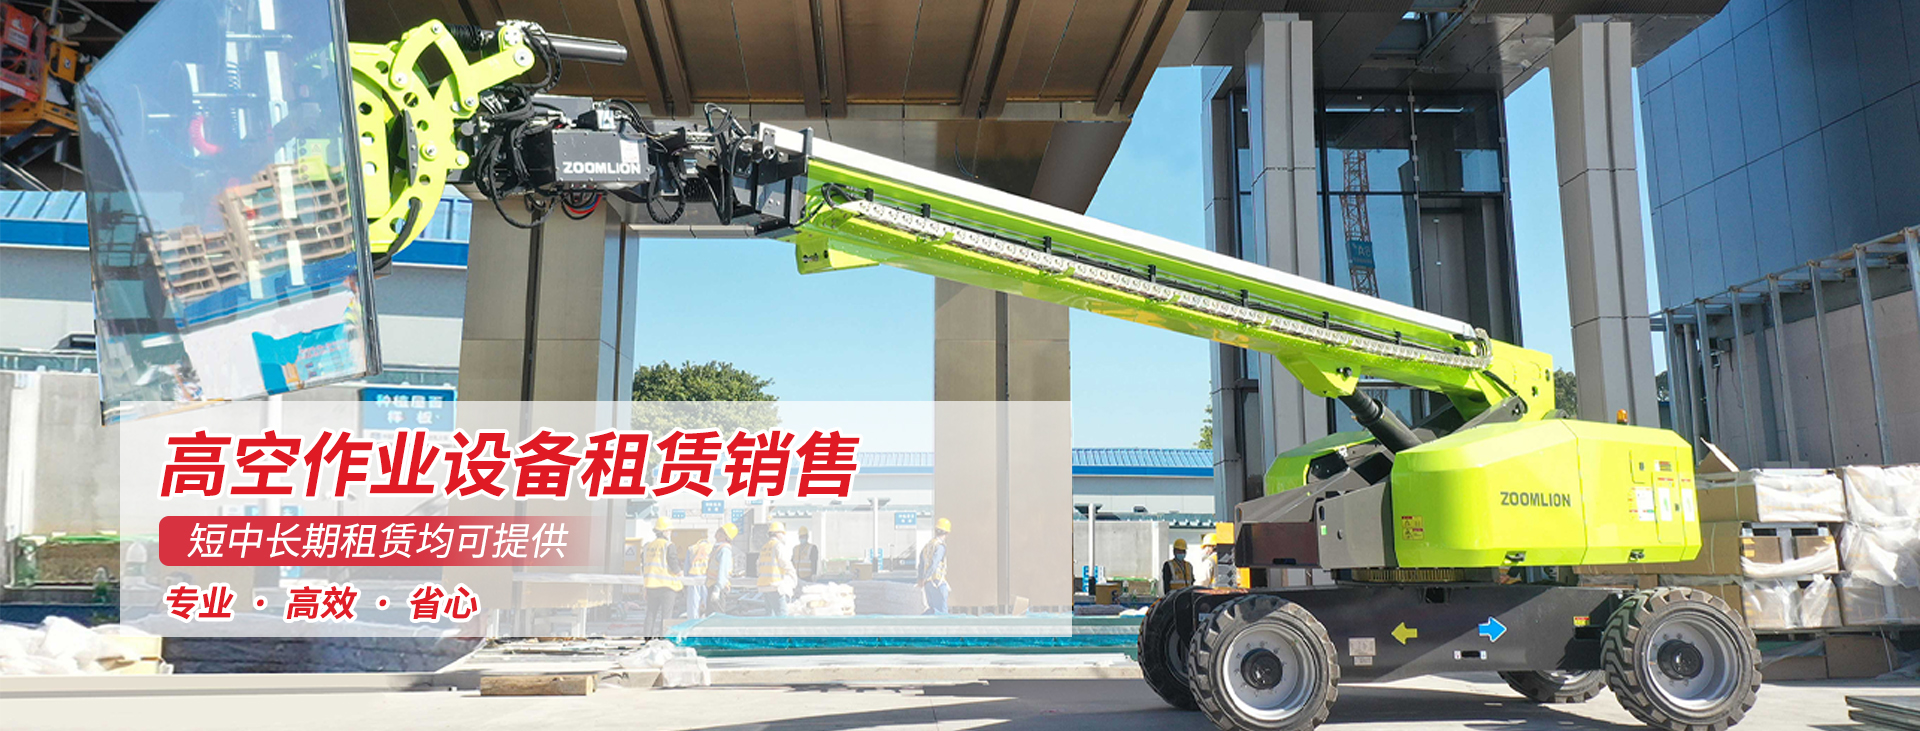 直臂式ZTV28-800 - 直臂式租赁- 四川钇年级工程机械设备有限公司